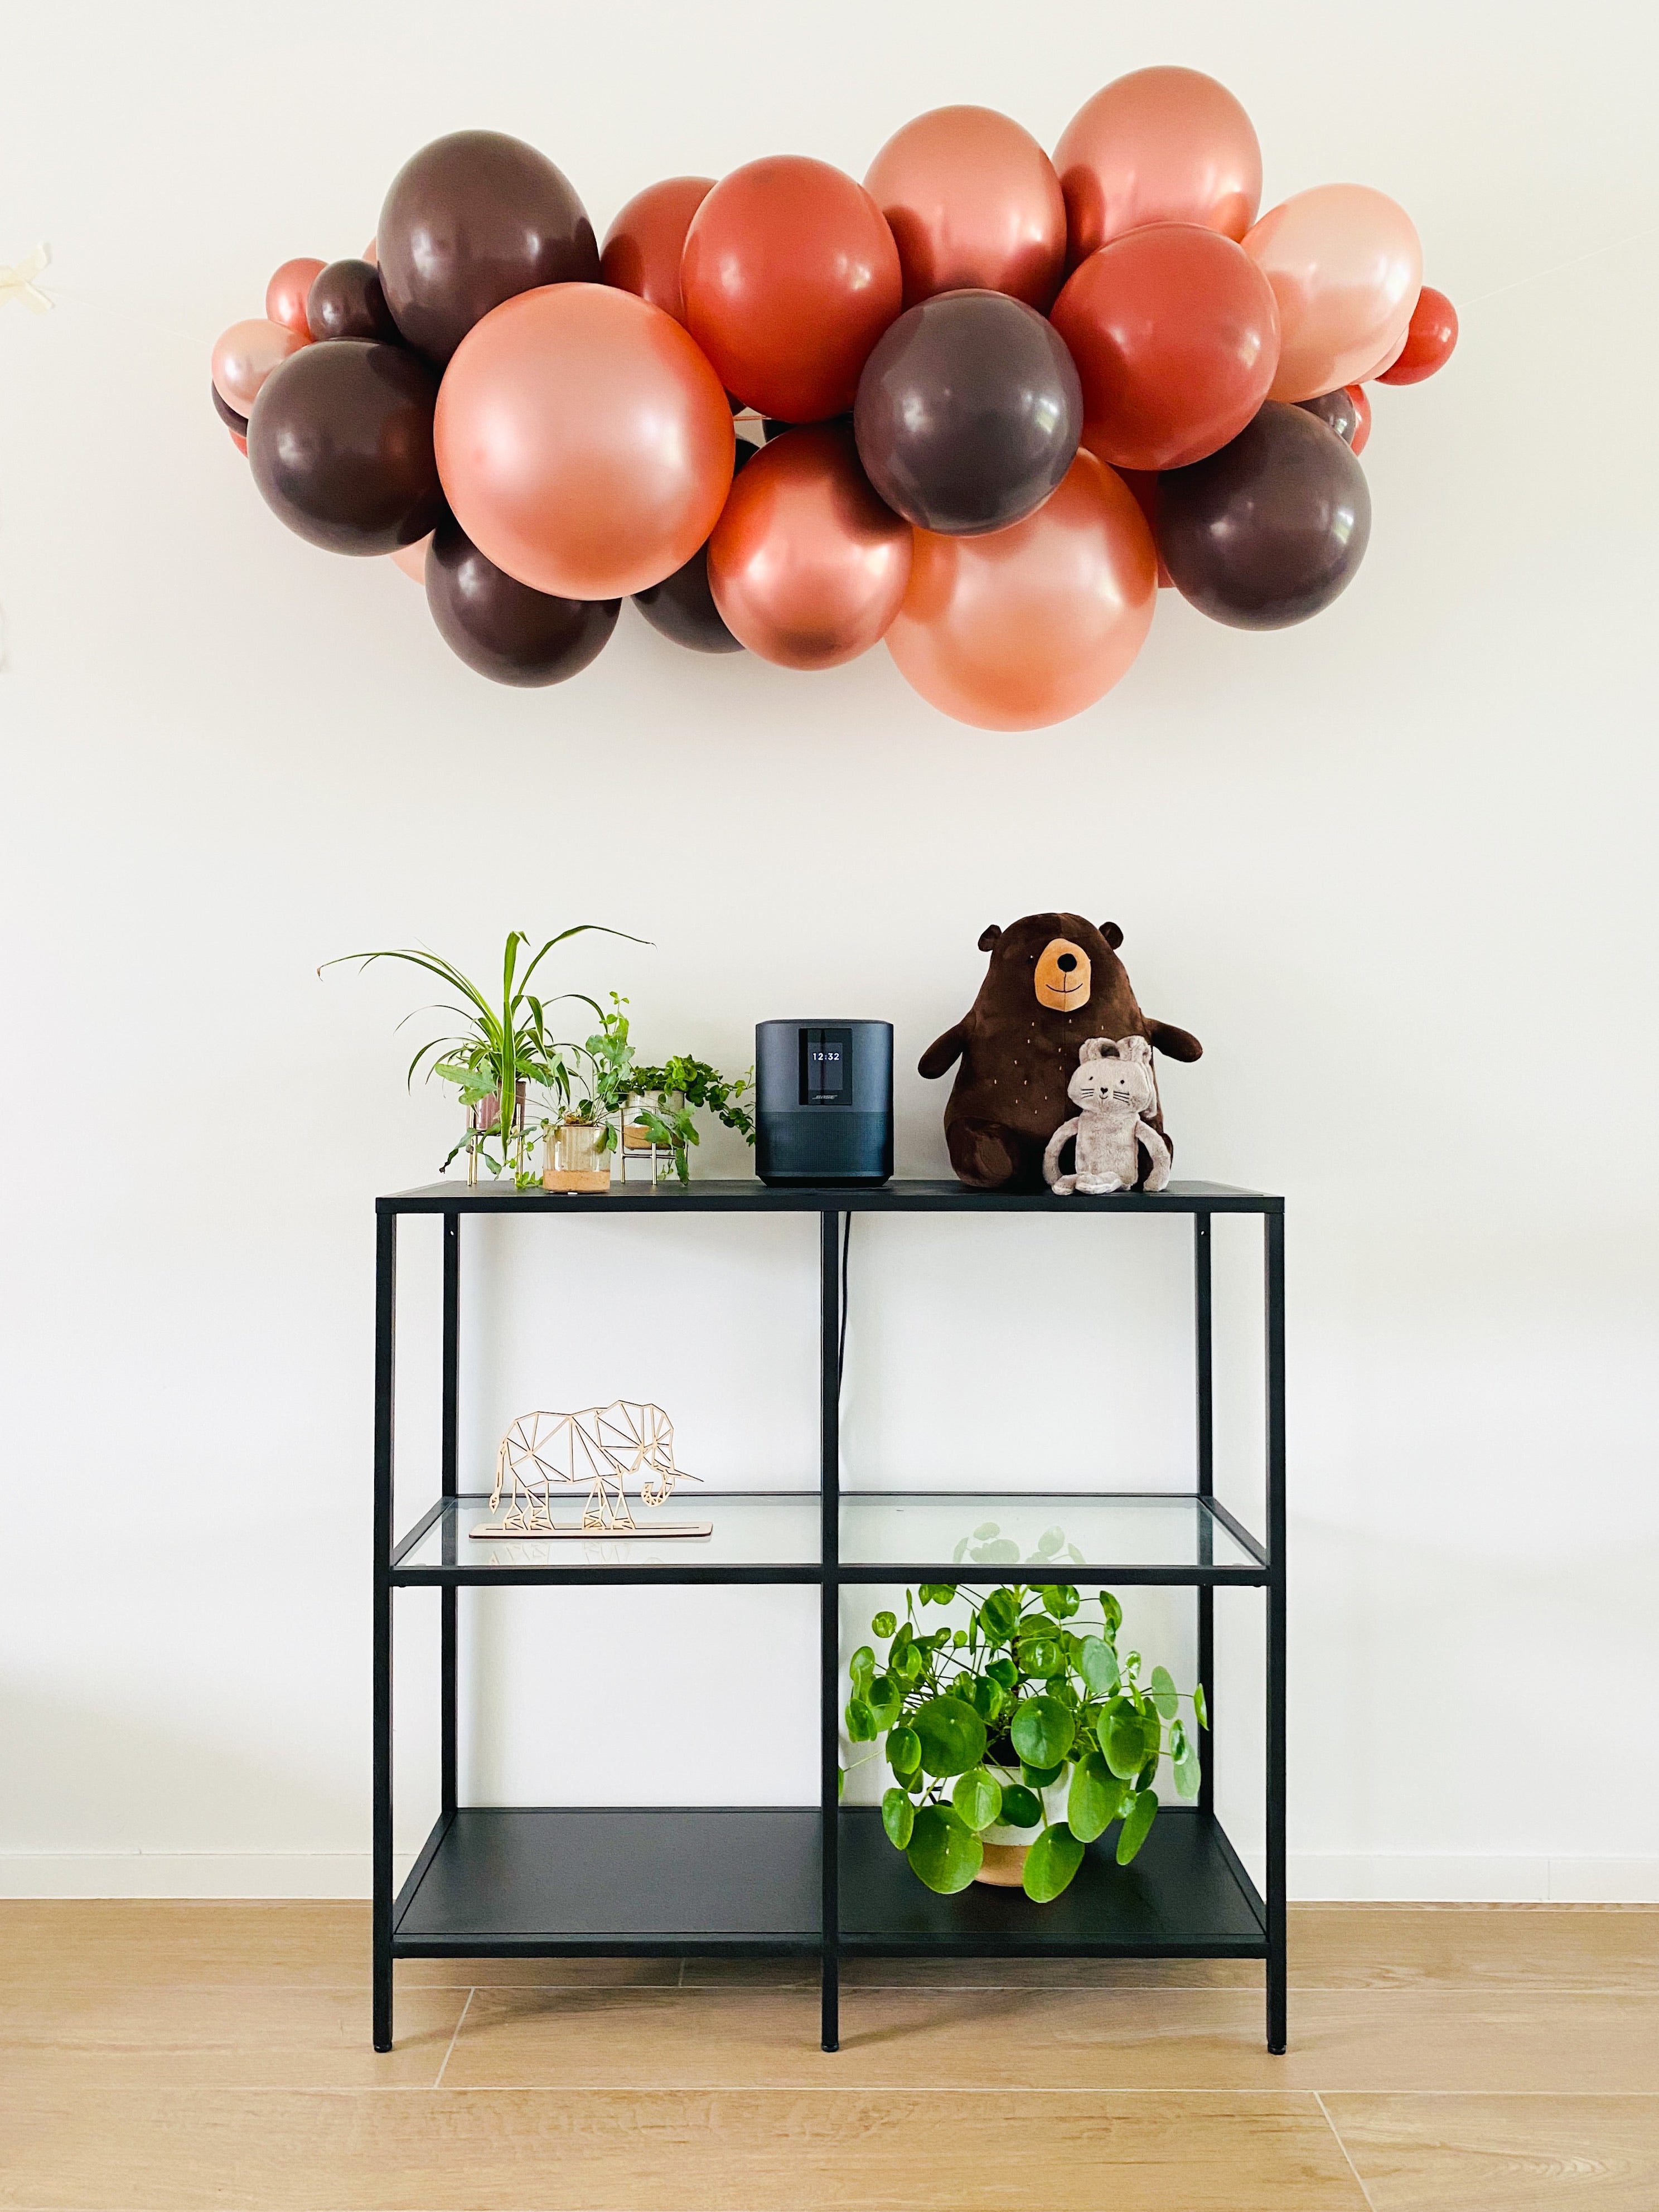 Ballonslinger ballonnenboog bruin chocolade brons als feestdecoratie